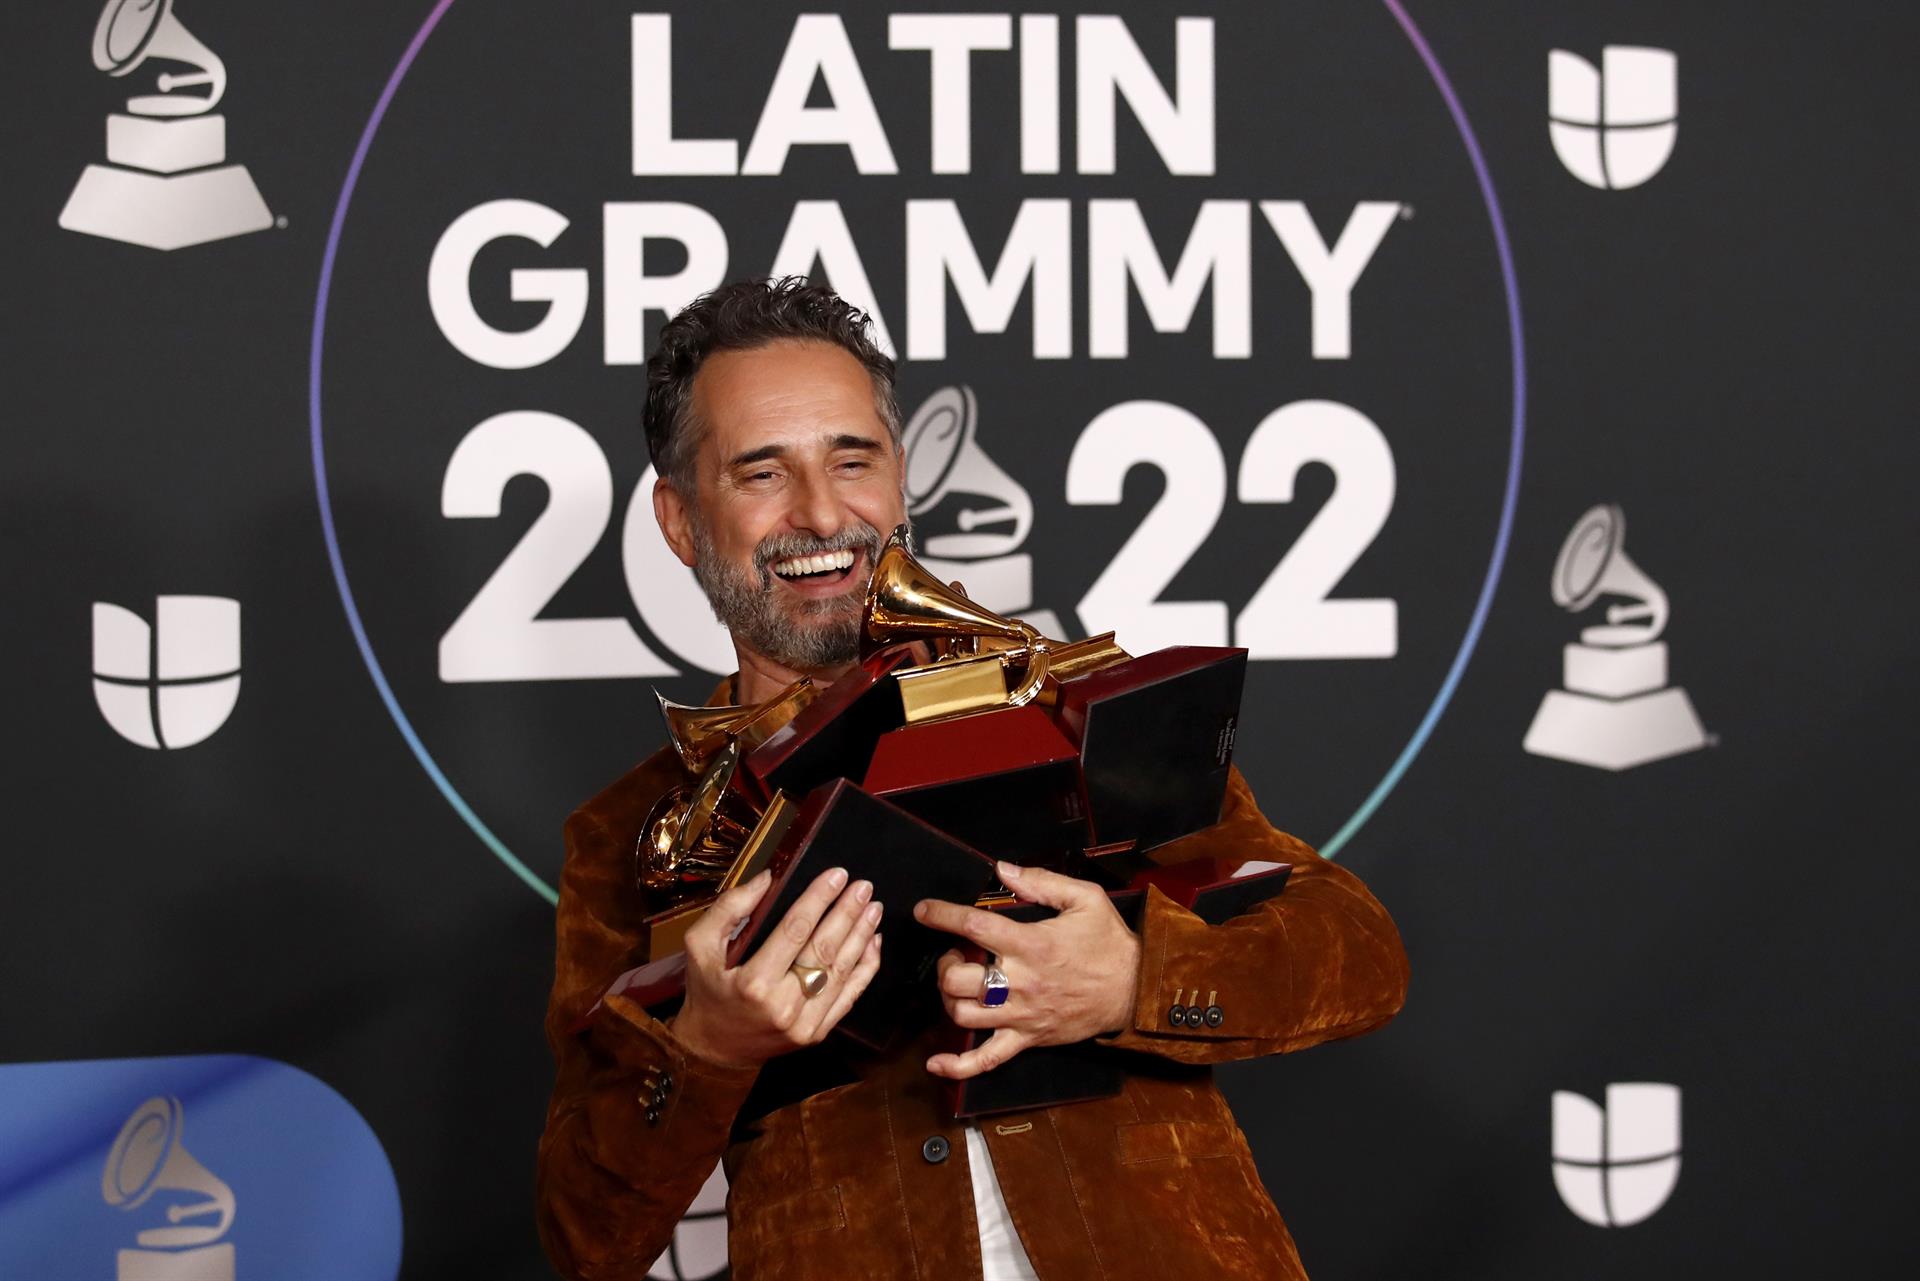 Ganadores de los Latin Grammy 2022: Rosalía, Bad Bunny y todos los premios